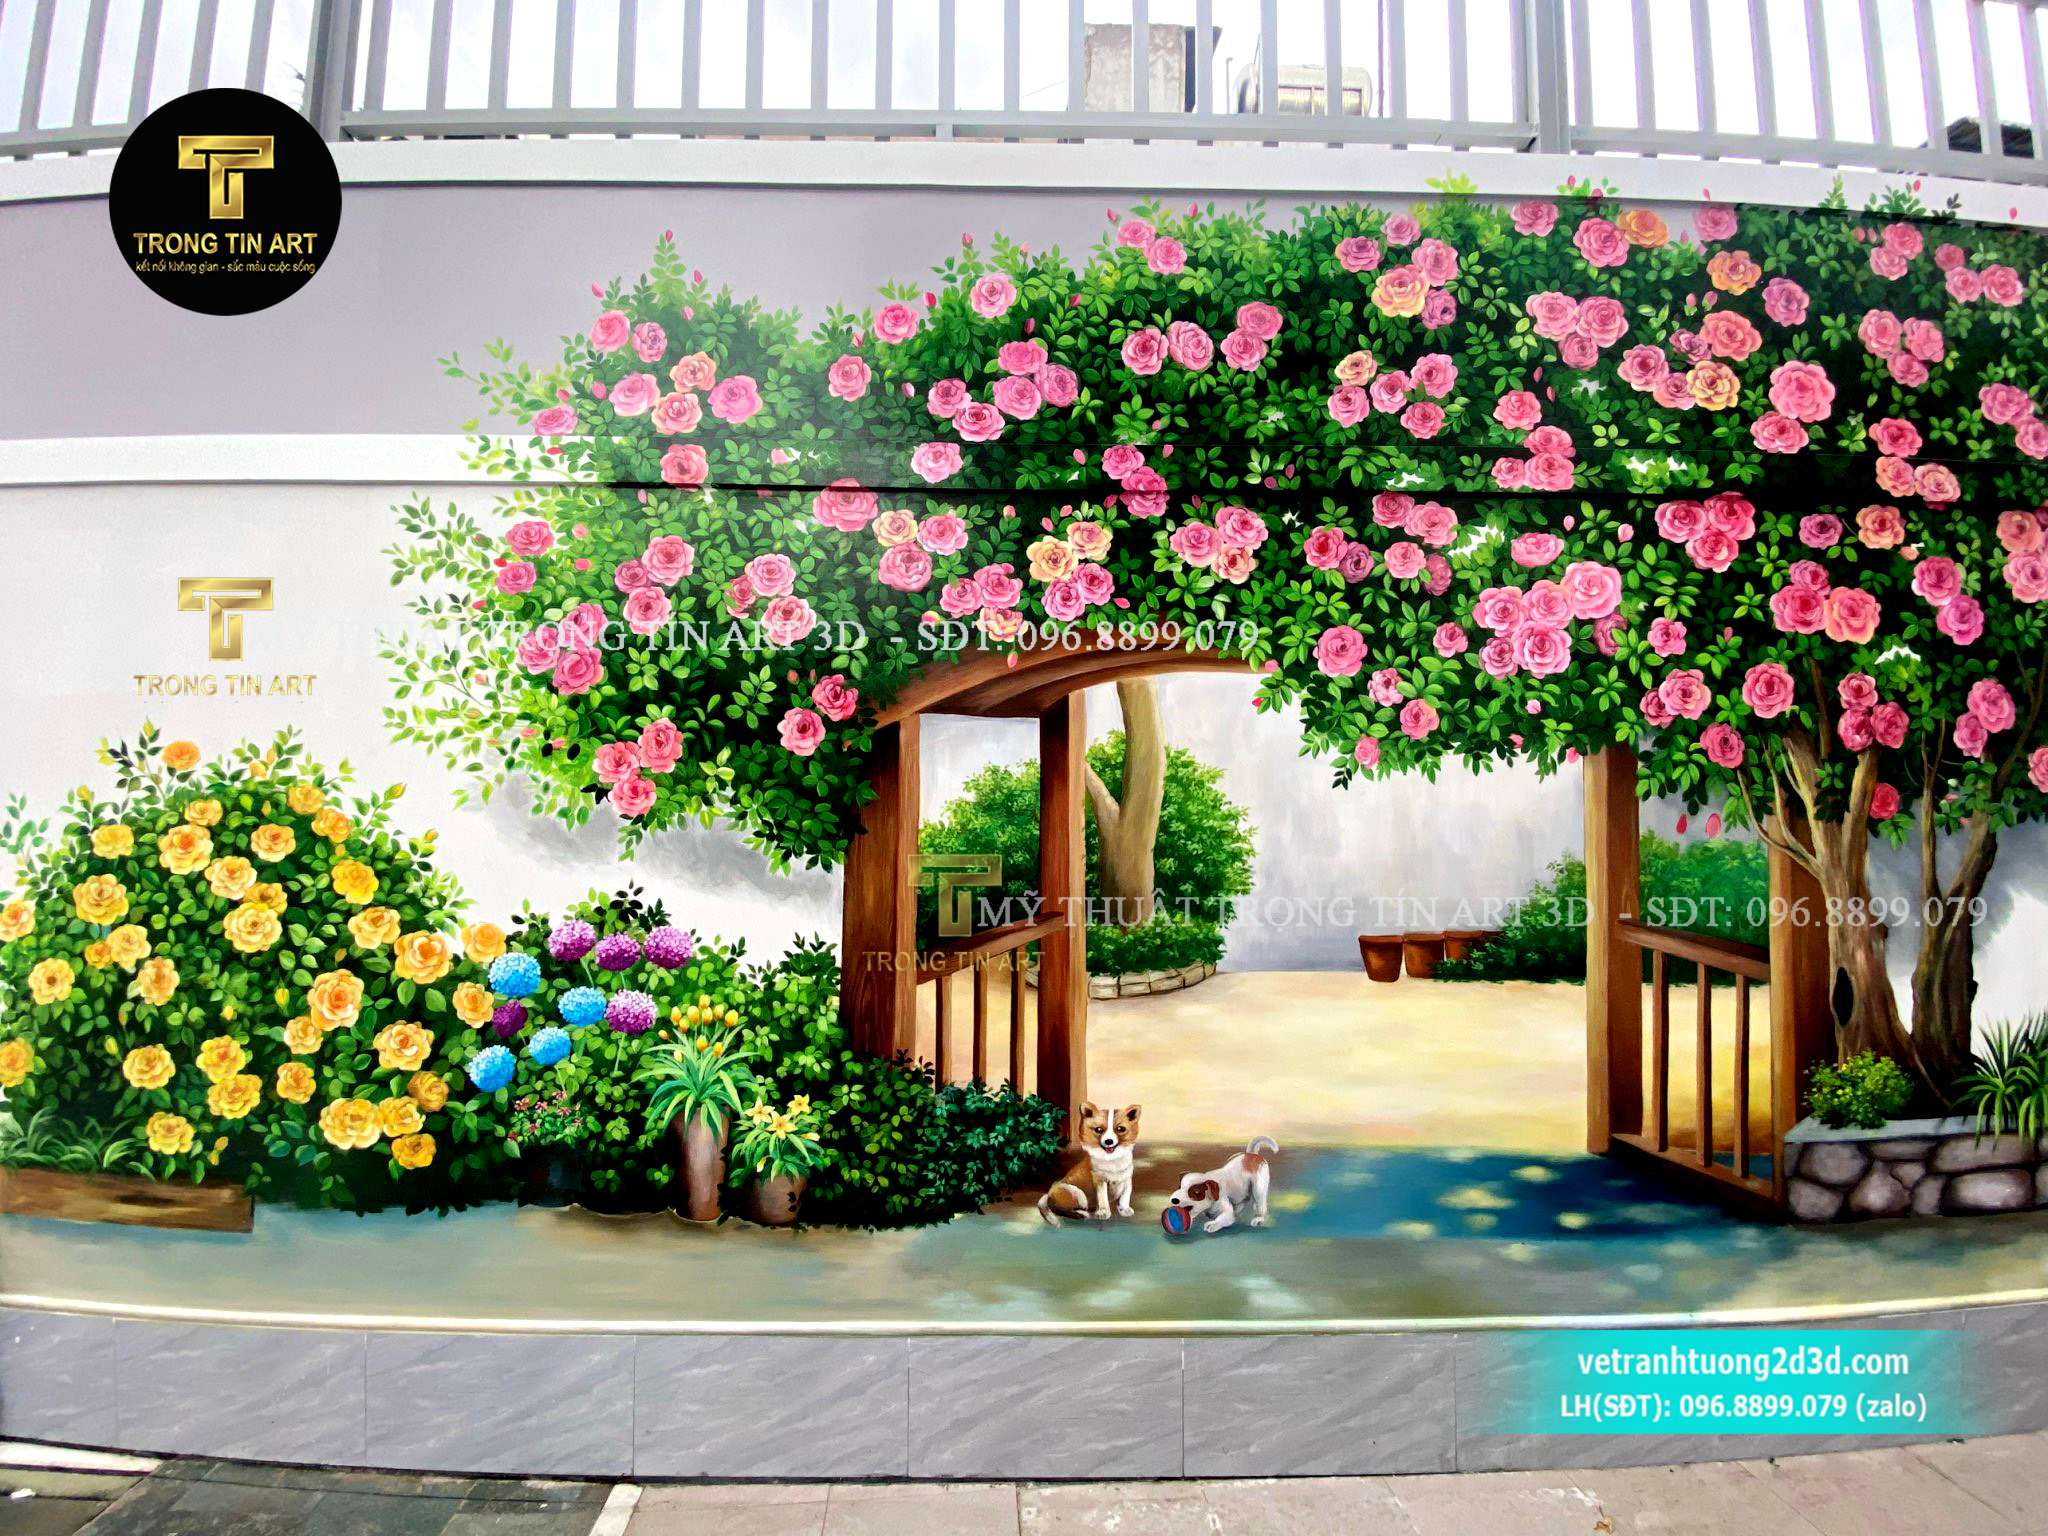 Vẽ Tranh Tường Hoa Hồng 3D - Vẽ Tranh Tường Rào Biệt Thự